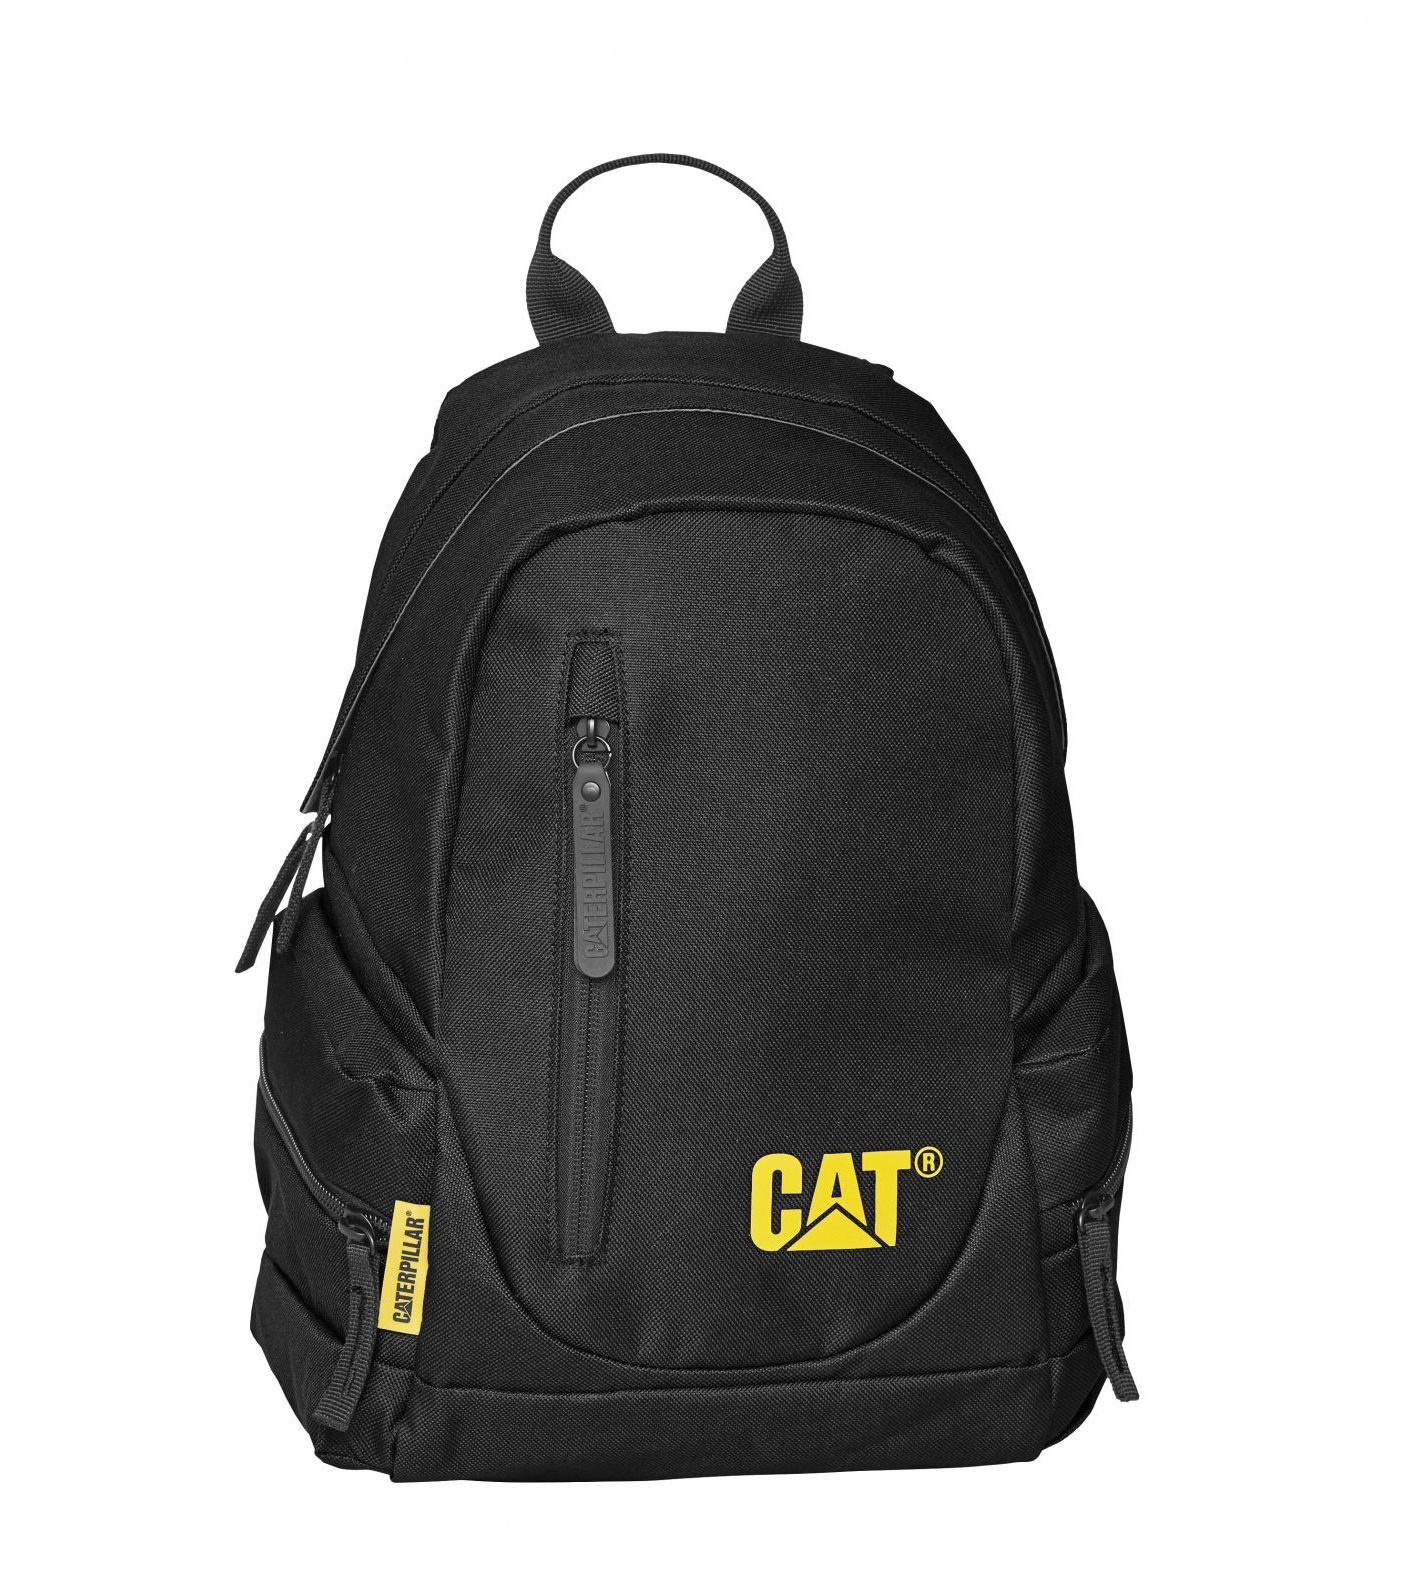 πλάτης mini full protect Caterpillar 11 L 83993 01 The Project Mini Backpack 1 scaled 1 e1646414785230